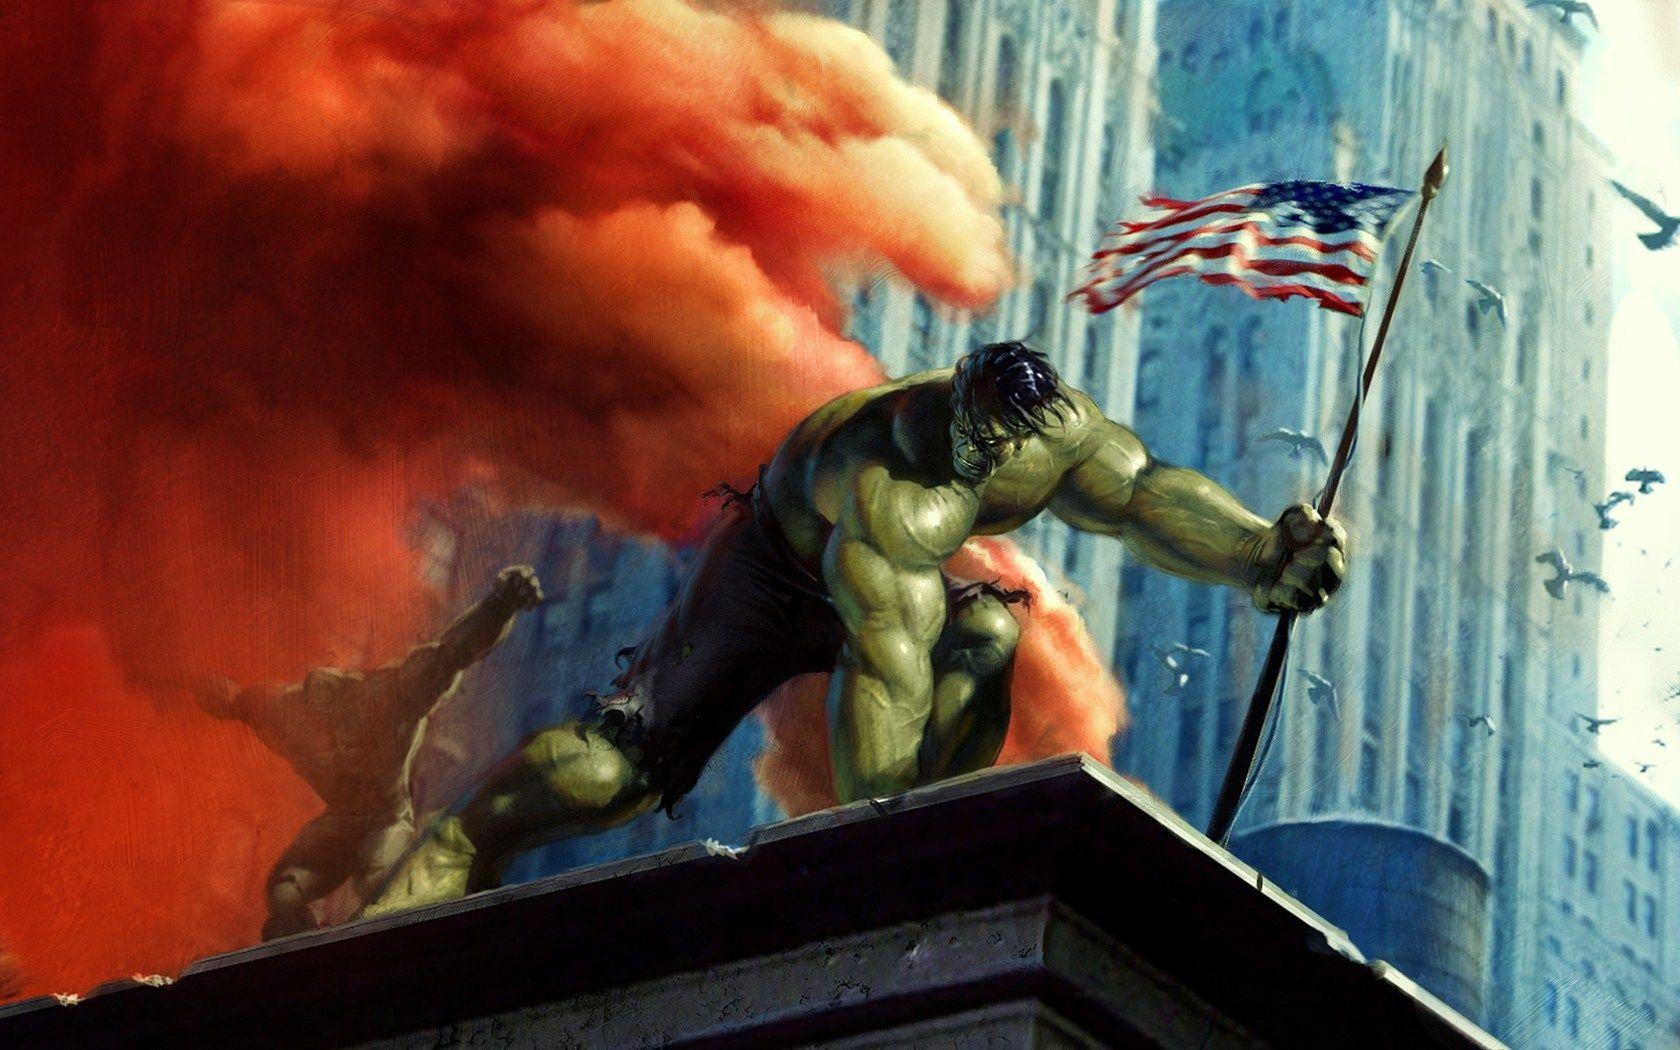 The Hulk Wallpaper Incredible Hulk Wallpaper